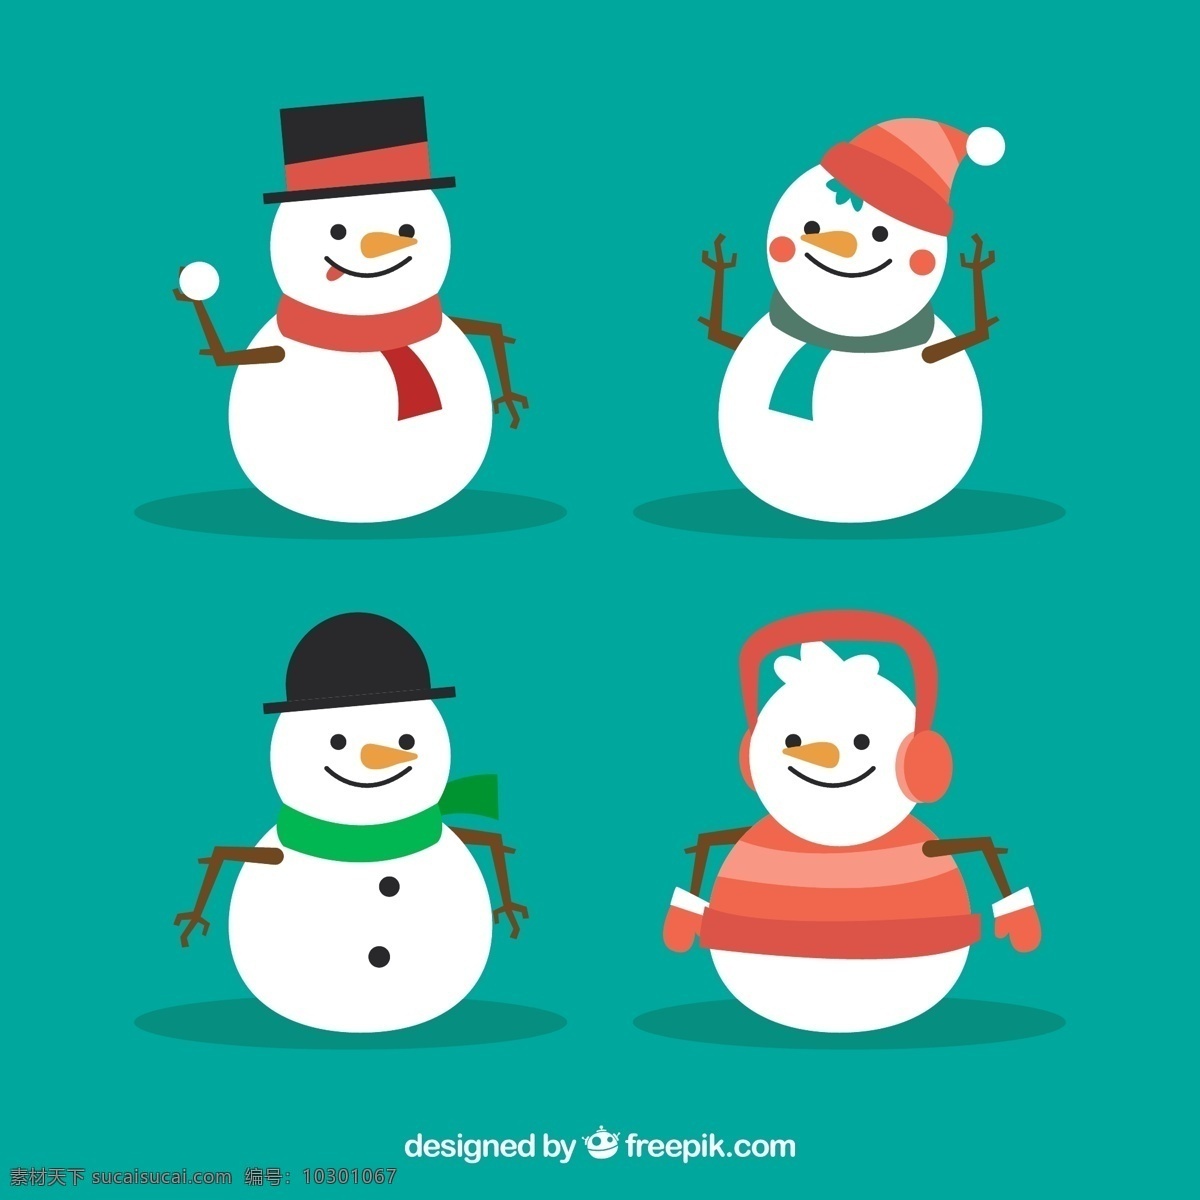 冬季 卡通 雪人 矢量图 格式 矢量 高清图片